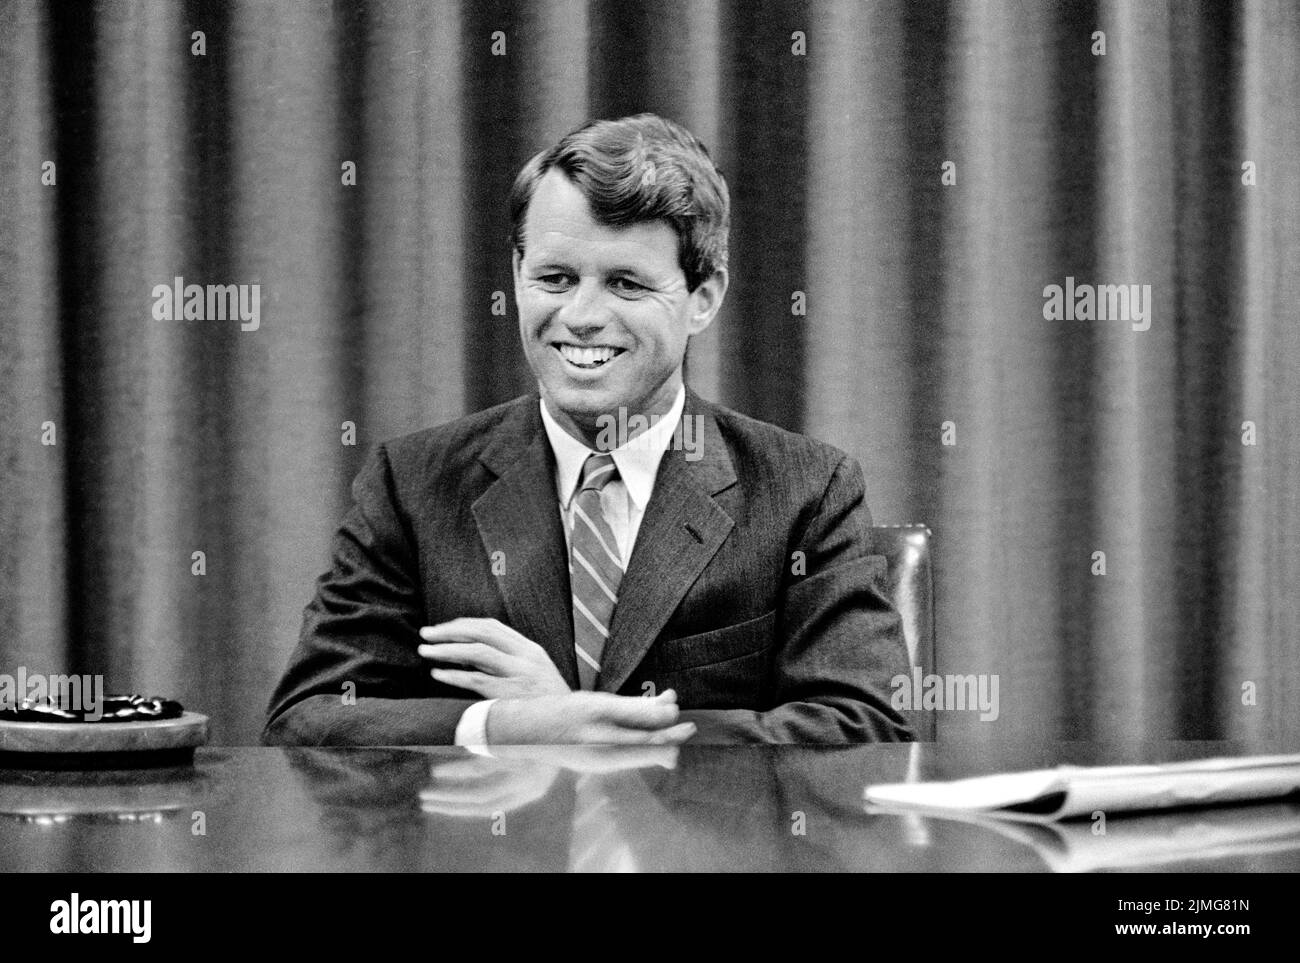 US-Generalanwalt Robert Kennedy während des Interviews, Washington, D.C., USA, Warren K. Leffler, U.S. News & World Report Magazine Photograph Collection, Januar 1963 Stockfoto